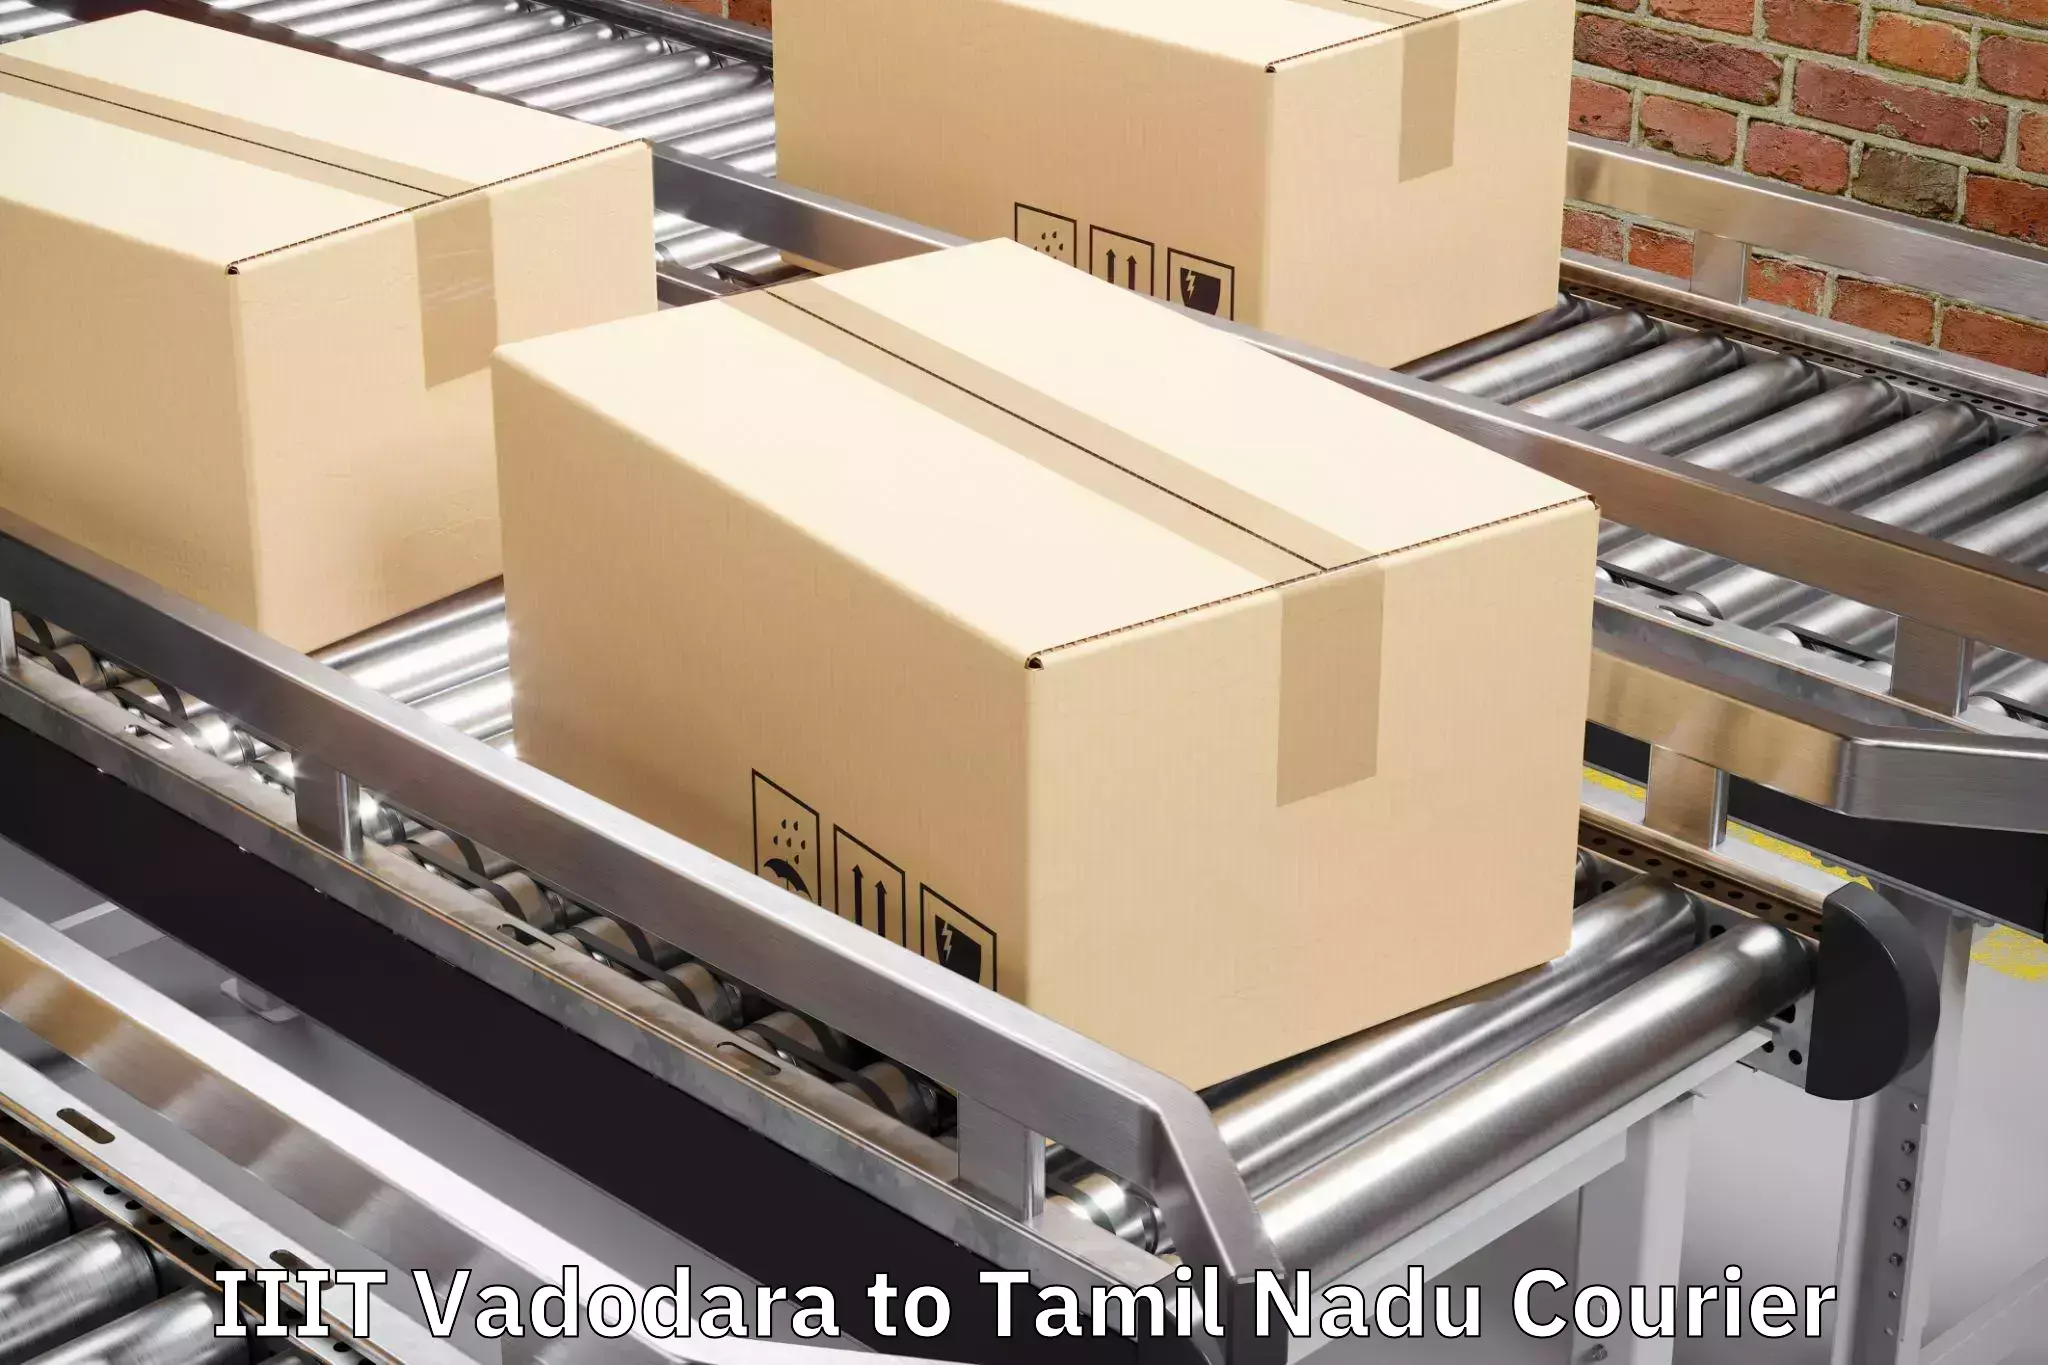 Multi-destination luggage transport IIIT Vadodara to Narikkudi